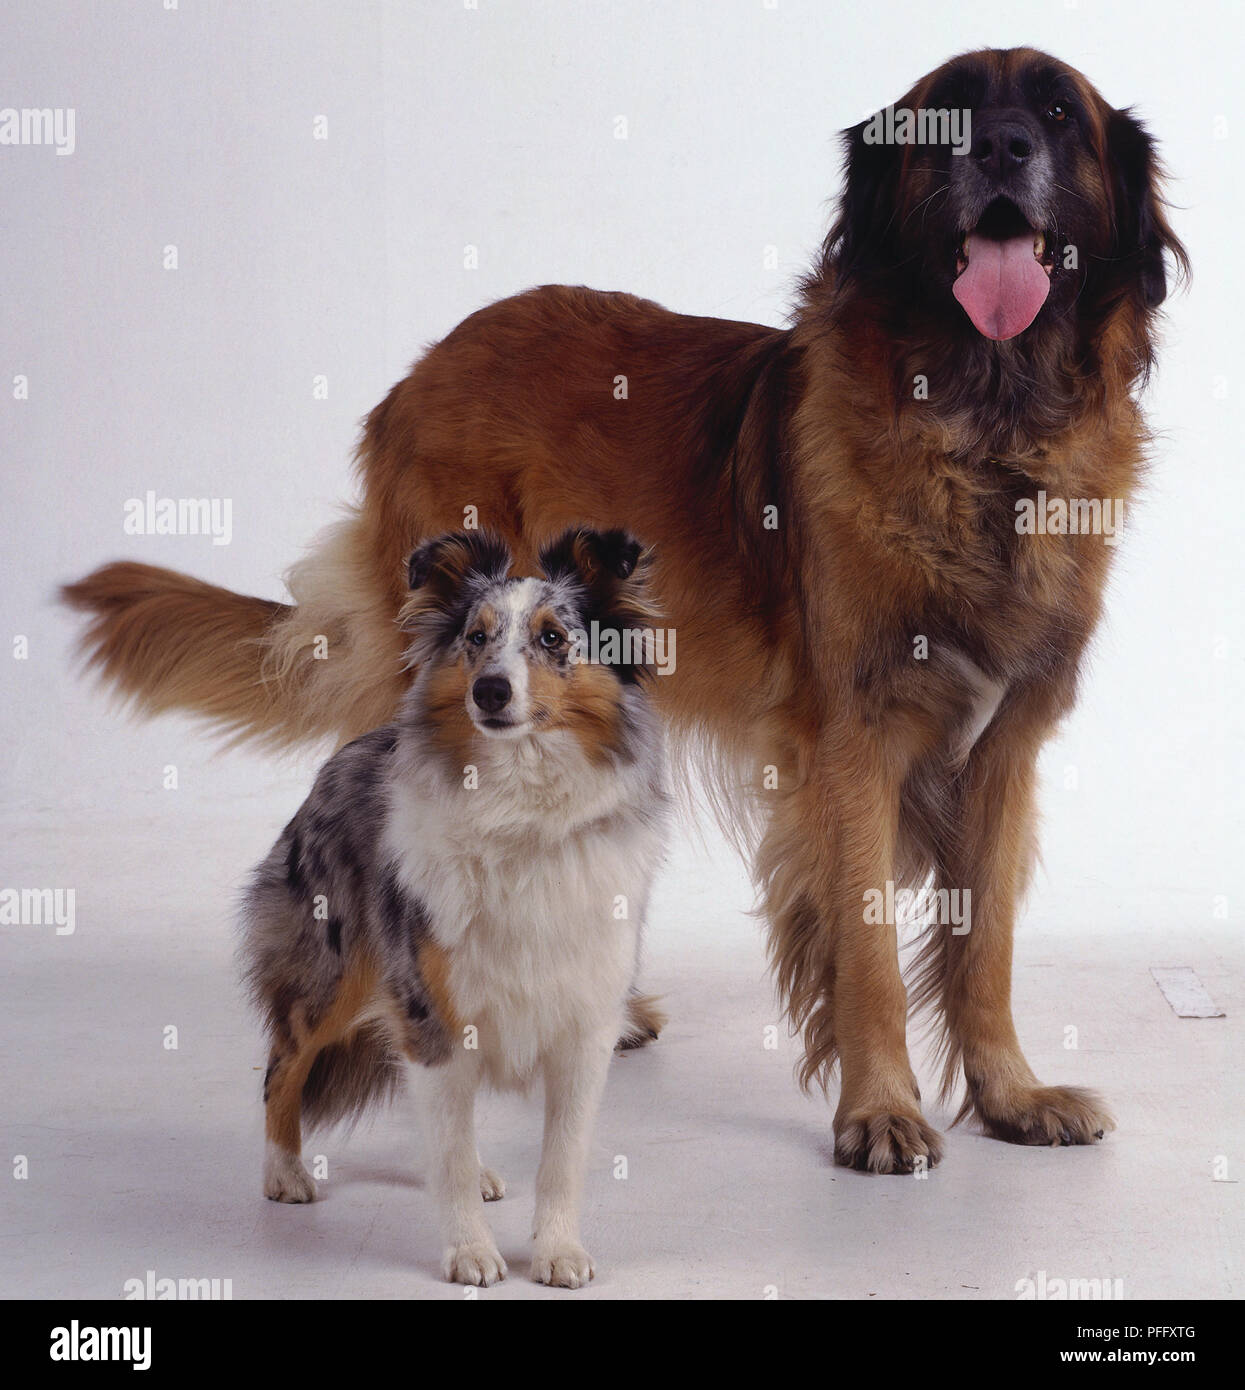 Un grand chien haletant d'une épaisse couche de fourrure brun-rougeâtre se trouve à côté un petit blanc, noir et feu chien. Banque D'Images